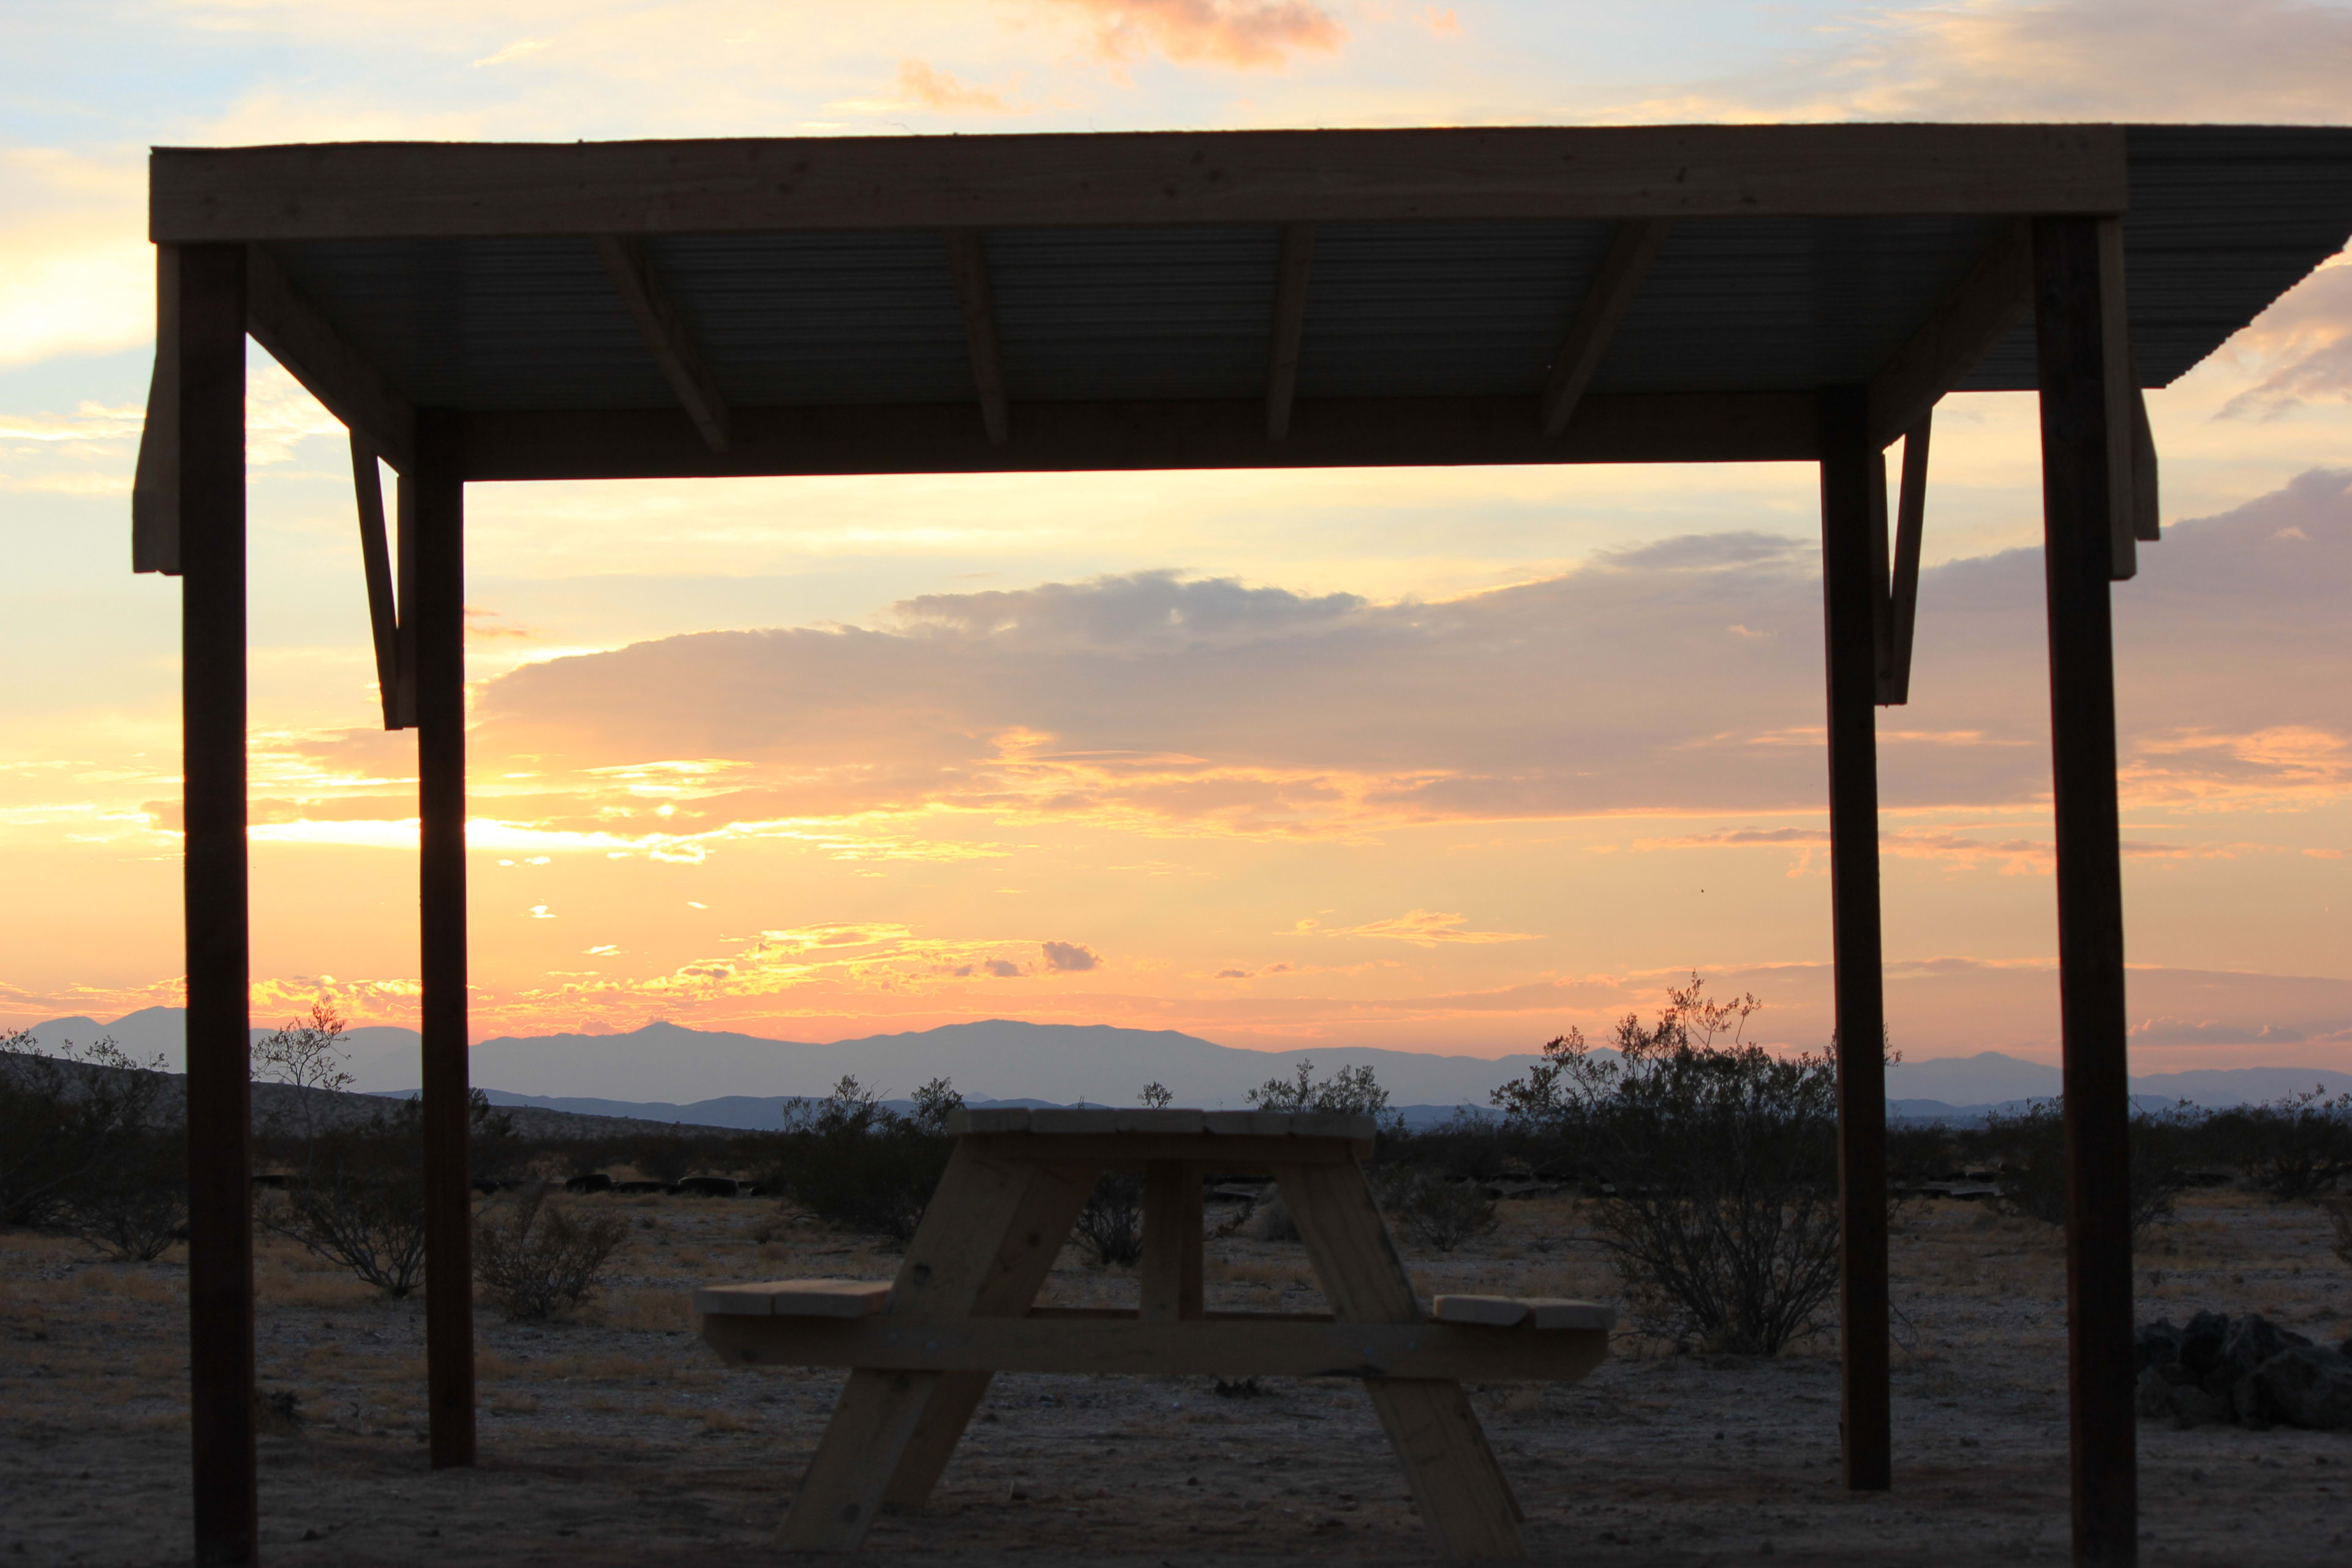 Evenings in the desert